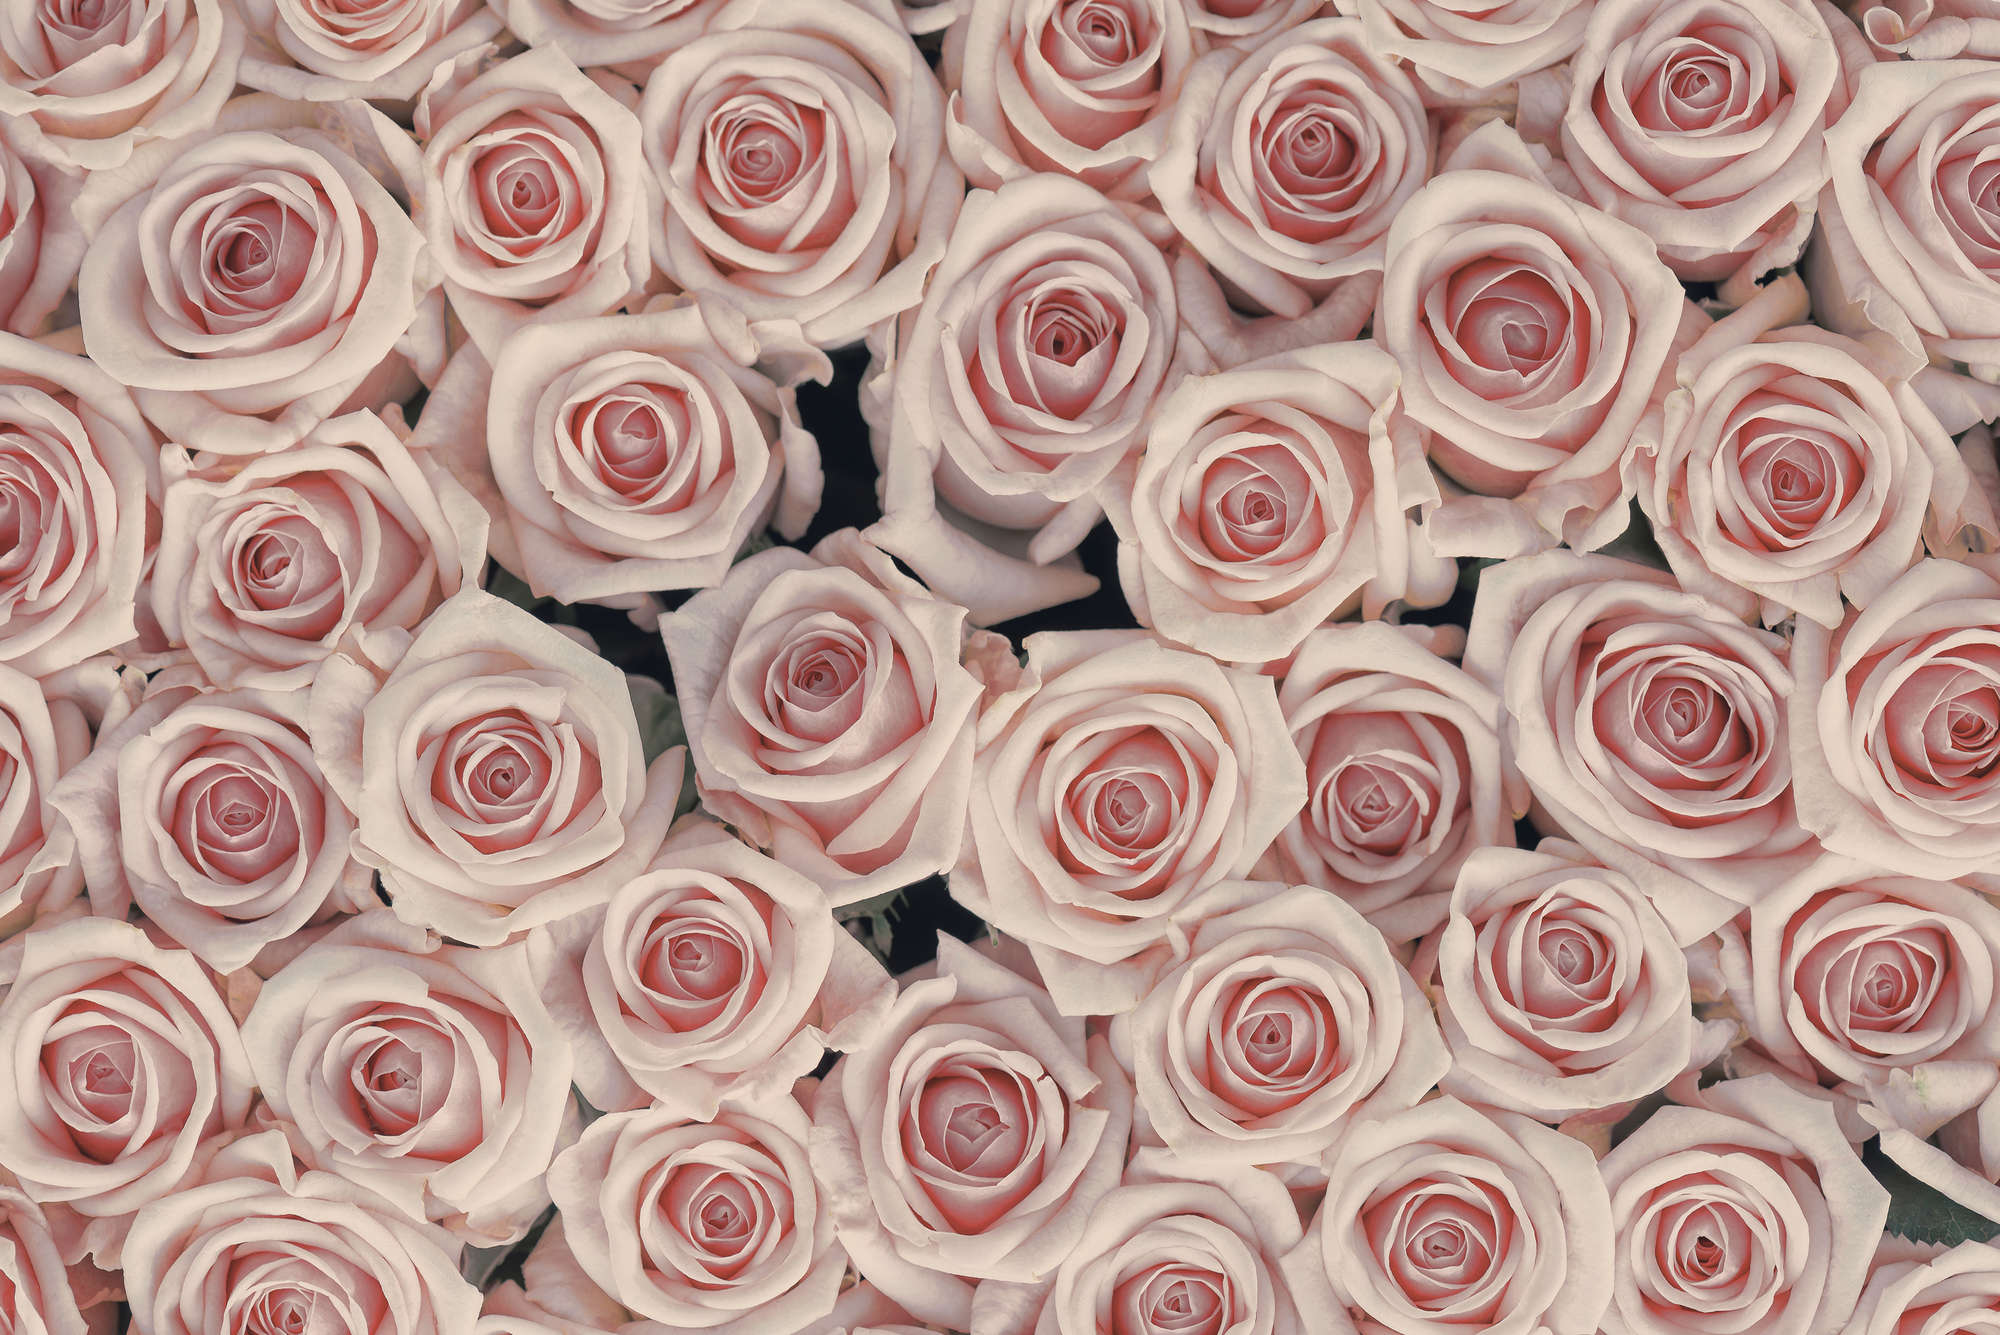             Papier peint végétal roses et blanches sur intissé lisse mat
        